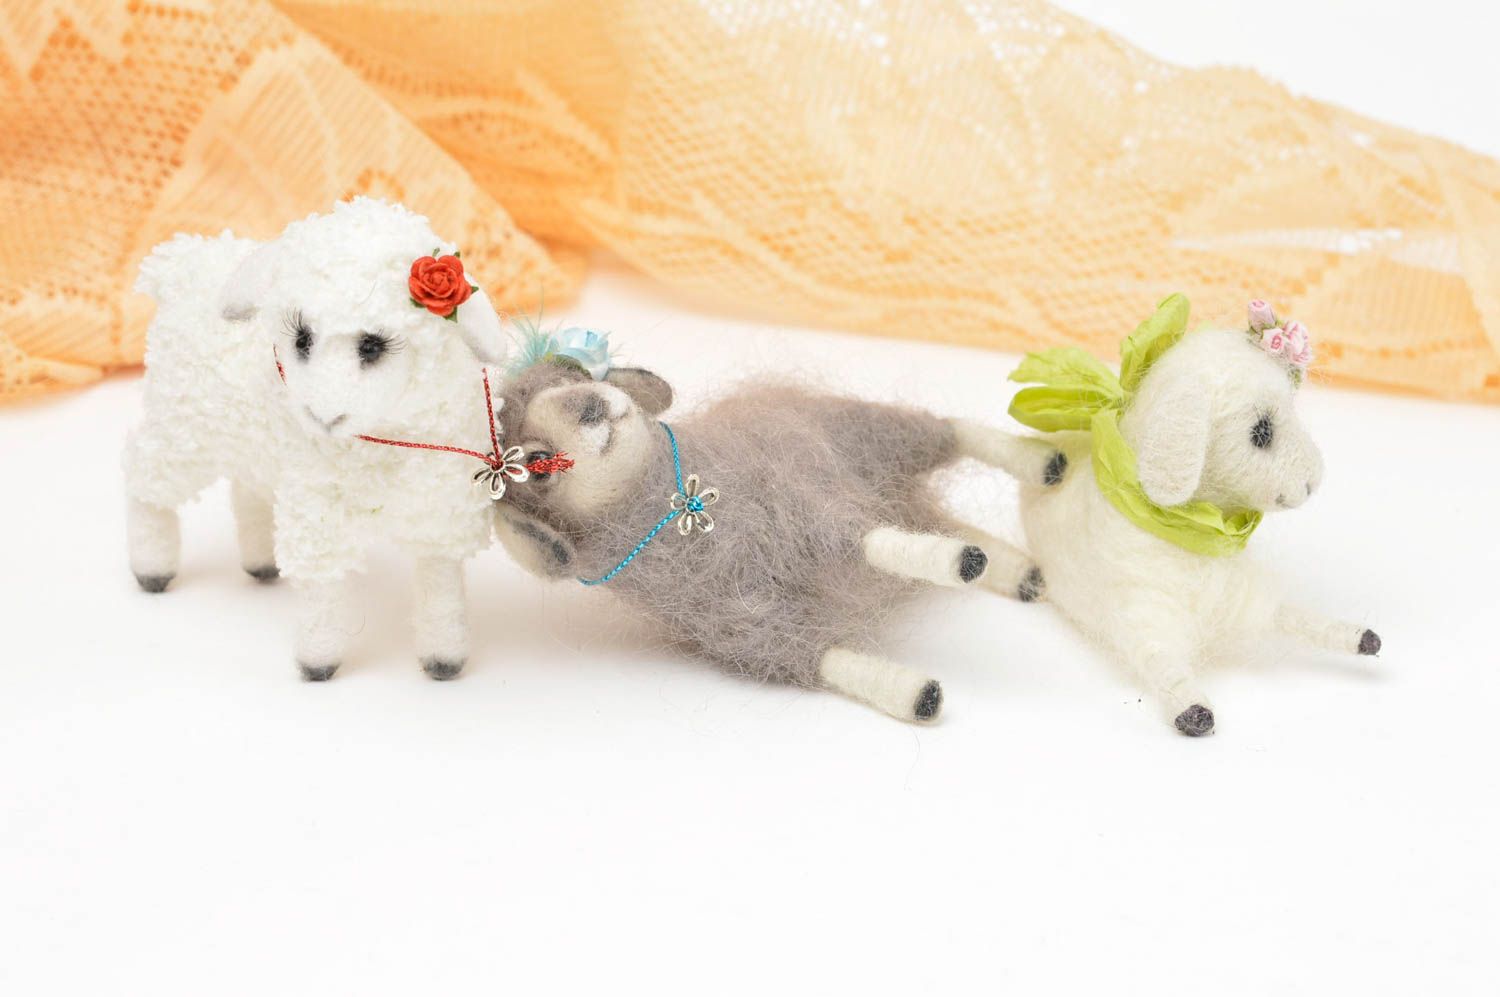 Handmade Spielzeug Set Stoff Tiere Geschenk Idee Kuschel Tiere Schafe schön foto 3